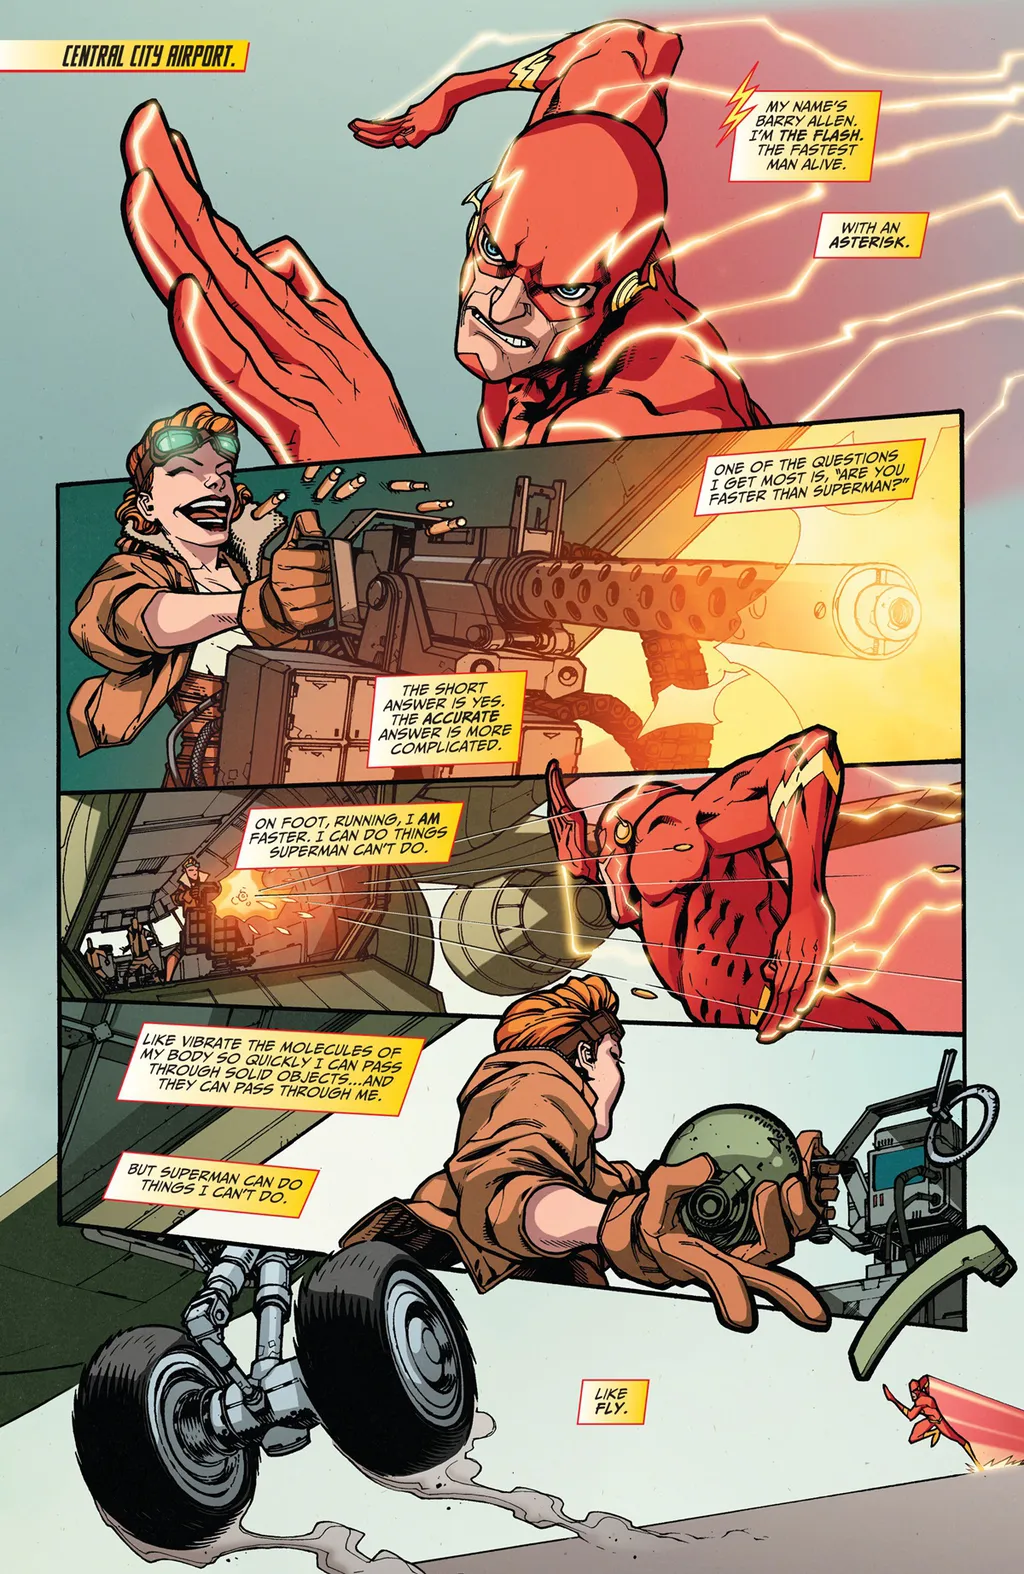 Flash lembra que não pode voar, mas atravessar obstáculos dá uma vantagem contra o Superman em uma corrida (Imagem: Reprodução/DC Comics)